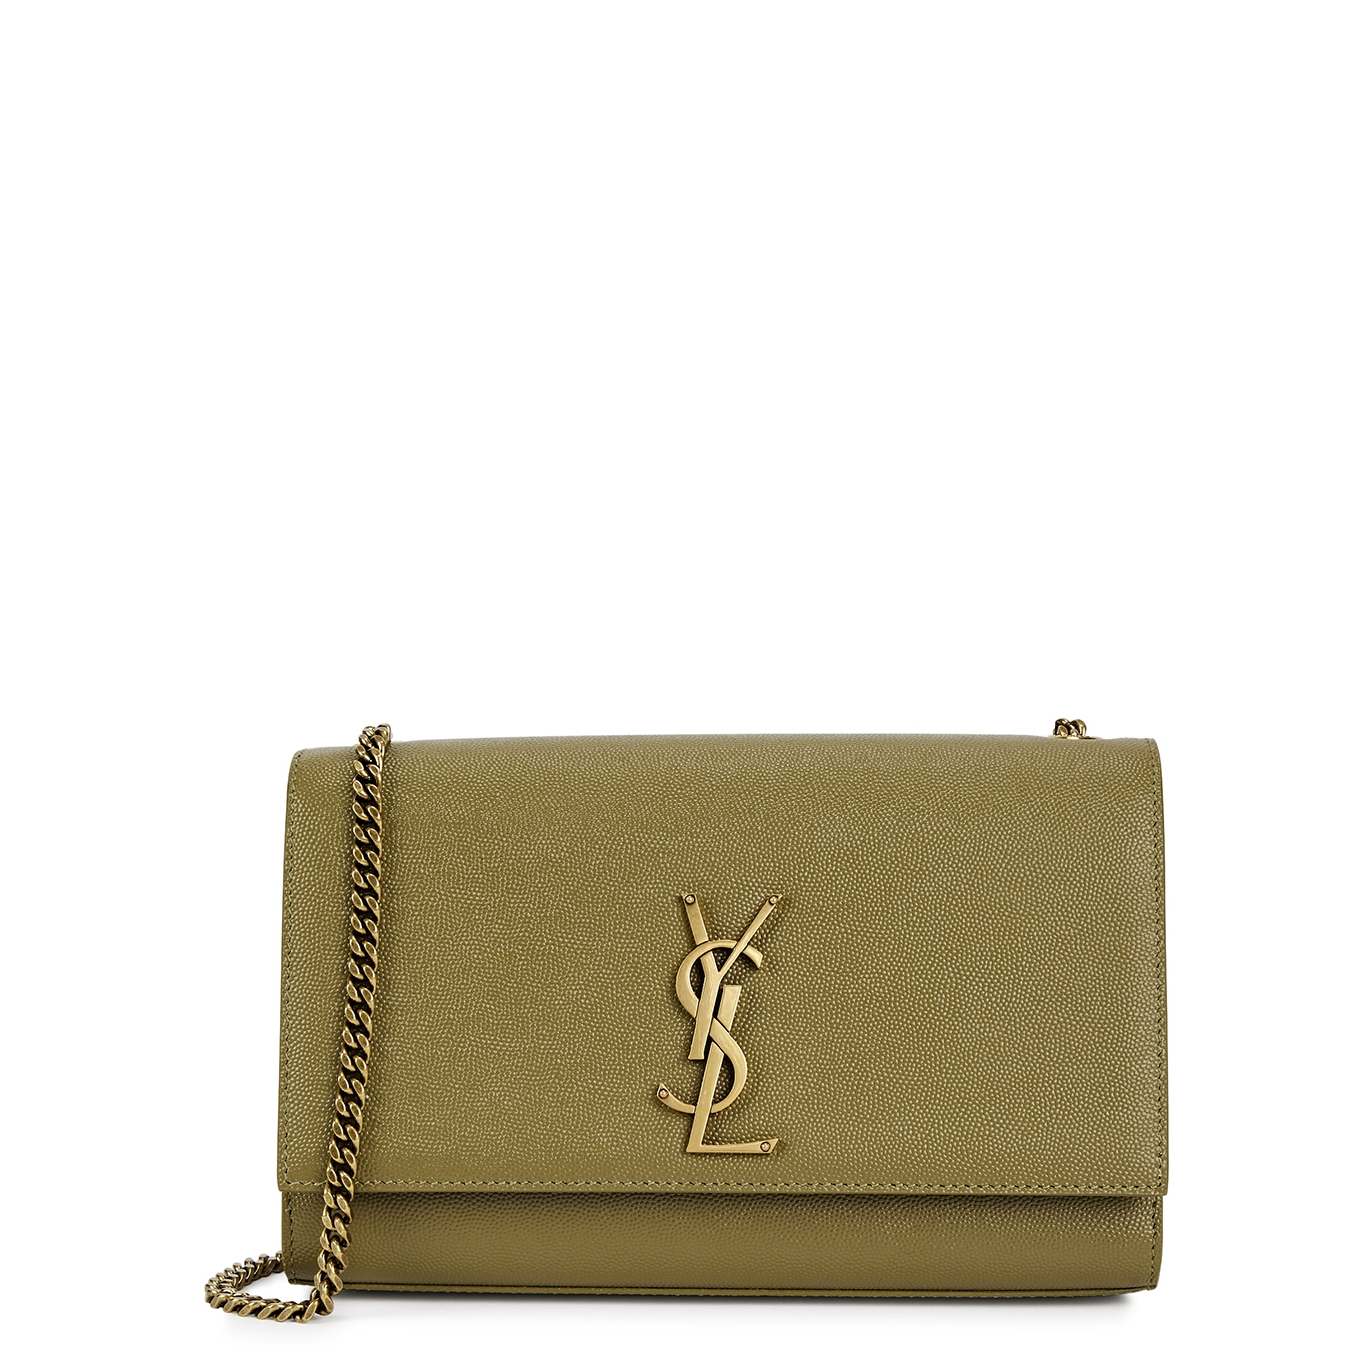 Saint Laurent Kate Medium Leather Shoulder Bag - Olive